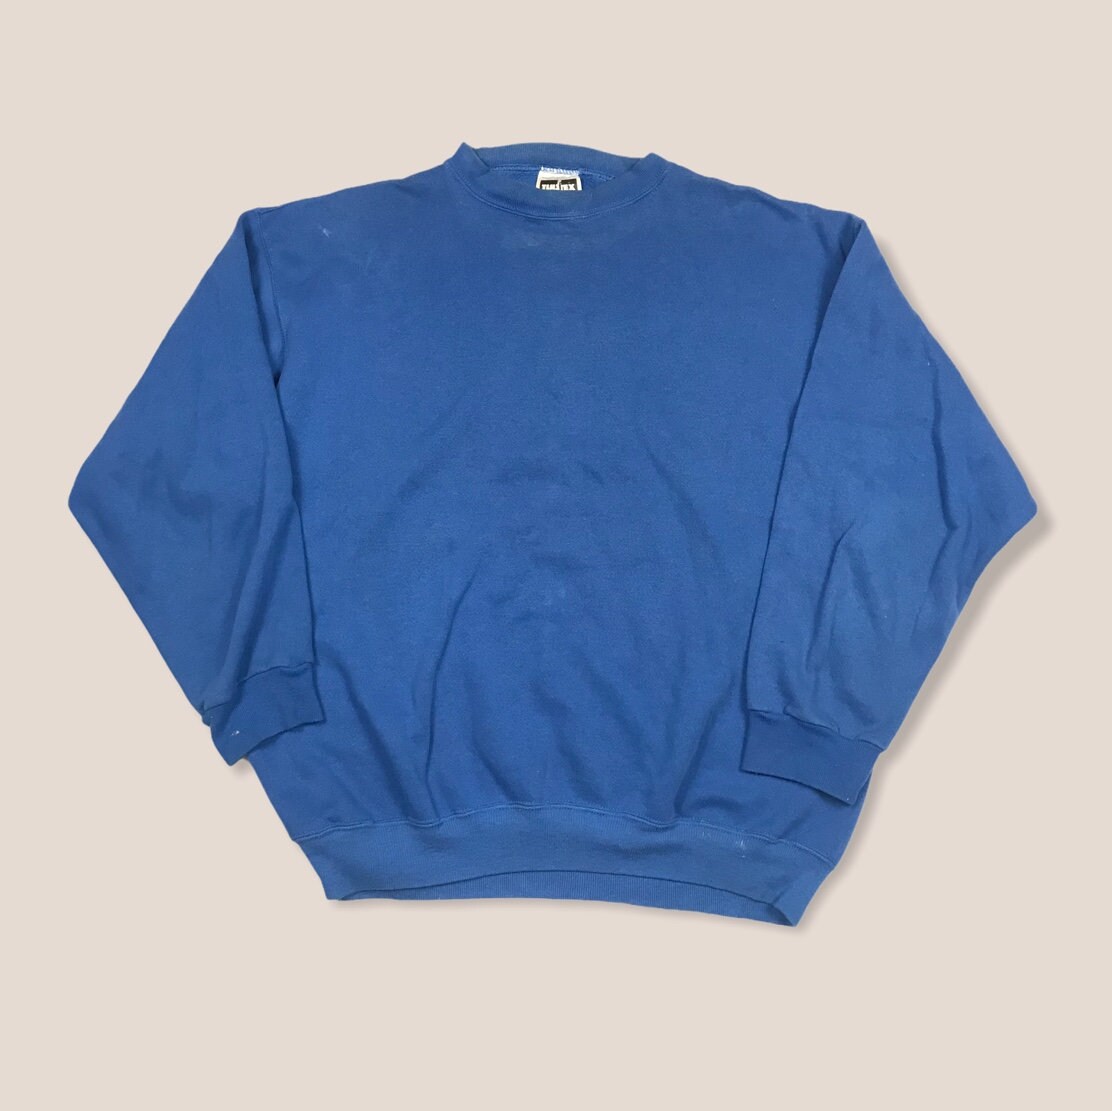 Vintage Tultex Blank Blue Crewneck Sweatshirt. - Etsy UK